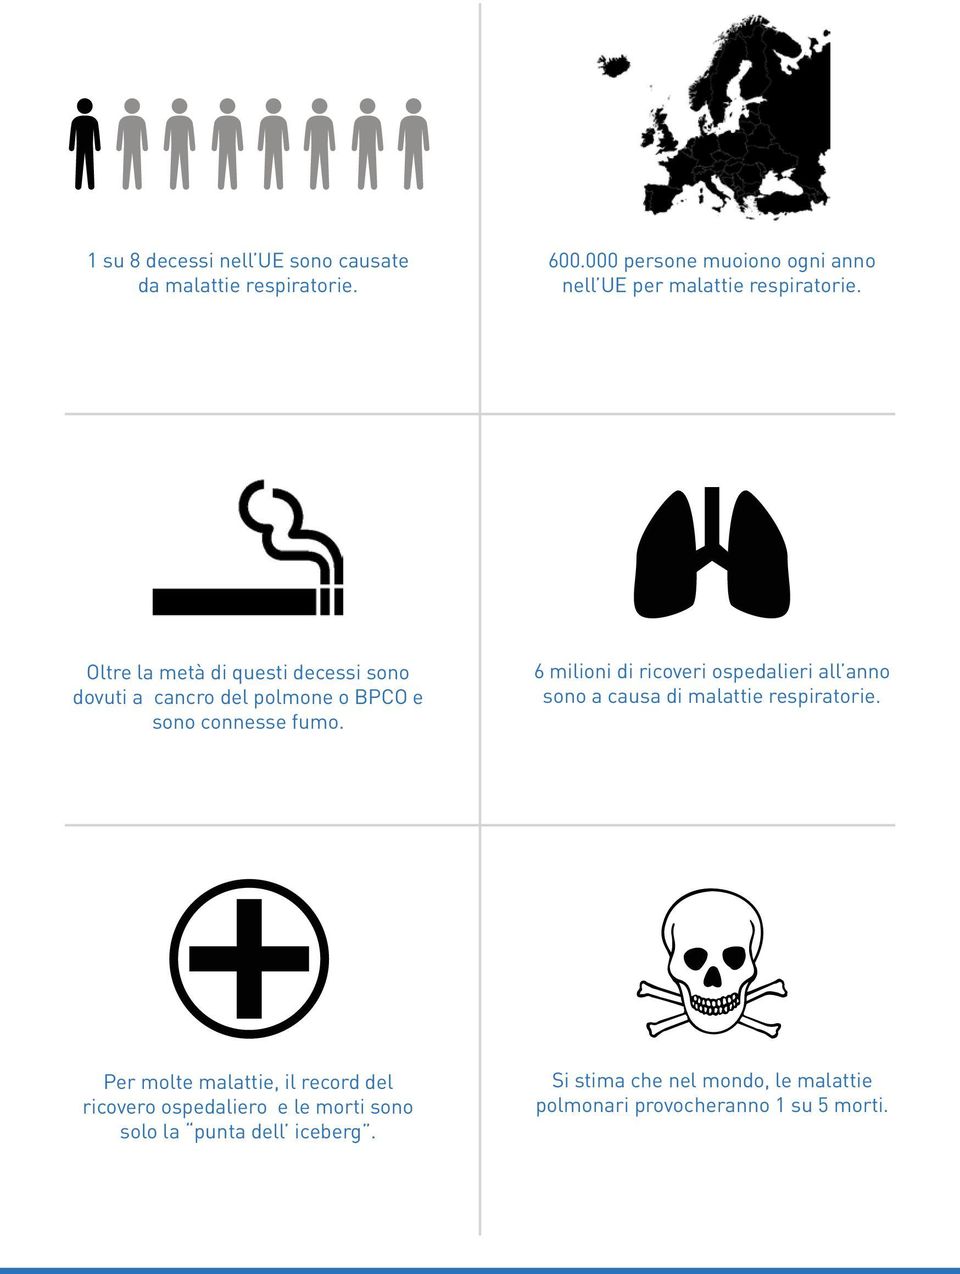 Oltre la metà di questi decessi sono dovuti a cancro del polmone o BPCO e sono connesse fumo.